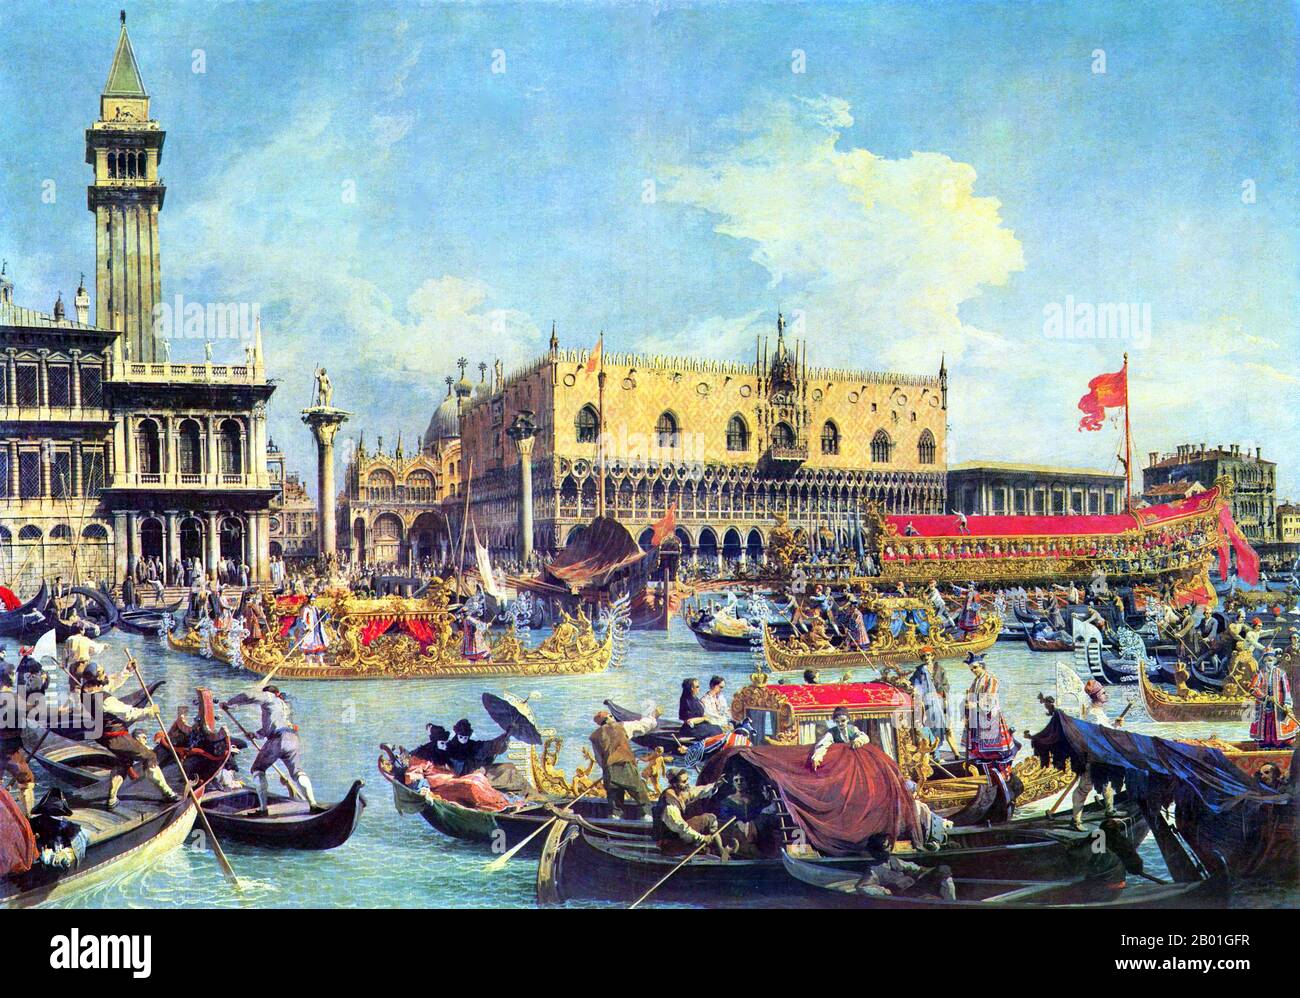 Italie/Venise: 'Le Bucintoro revenant à Molo le jour de l'Ascension'. Peinture à l'huile sur toile par Canaletto (18 octobre 1697 - 10 avril 1768), 1732. Pendant des siècles, Venise a été le premier partenaire commercial de l’Europe avec le Moyen-Orient et l’Empire byzantin en particulier. La puissance navale et commerciale vénitienne était inégalée en Europe jusqu'à ce qu'elle perde une série de guerres aux armées ottomanes au 15th siècle. La ville a perdu quelque 50 000 000 personnes à la peste noire en 1575-1577, mais est restée un important centre de fabrication et un port bien avant le 18th siècle. Banque D'Images